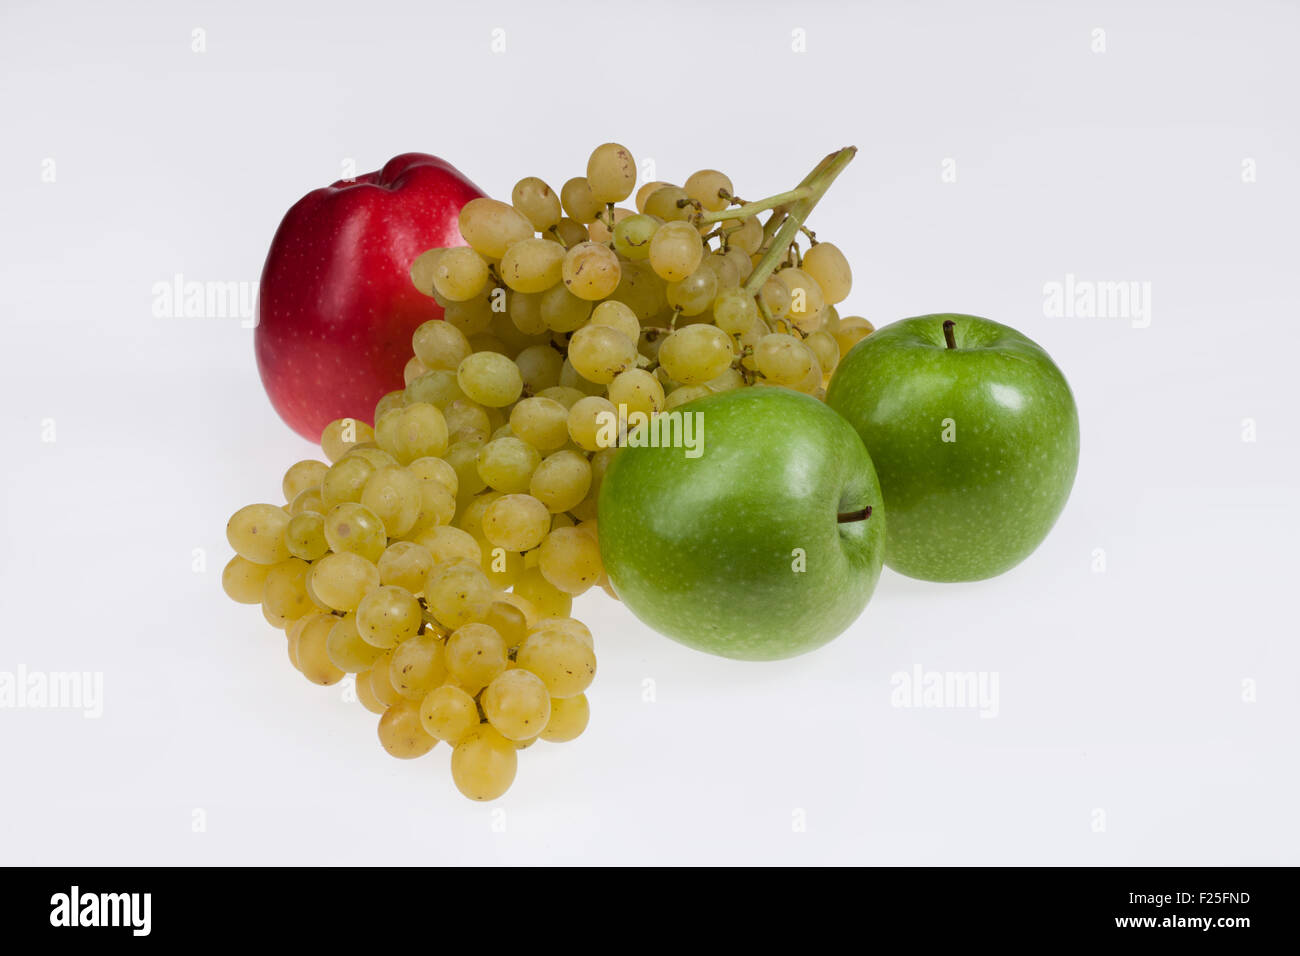 La direction générale des milieux isolés berry vert pomme raisin groupe produit alimentaire fruits close up studio macro dessert frais fraîcheur table Banque D'Images